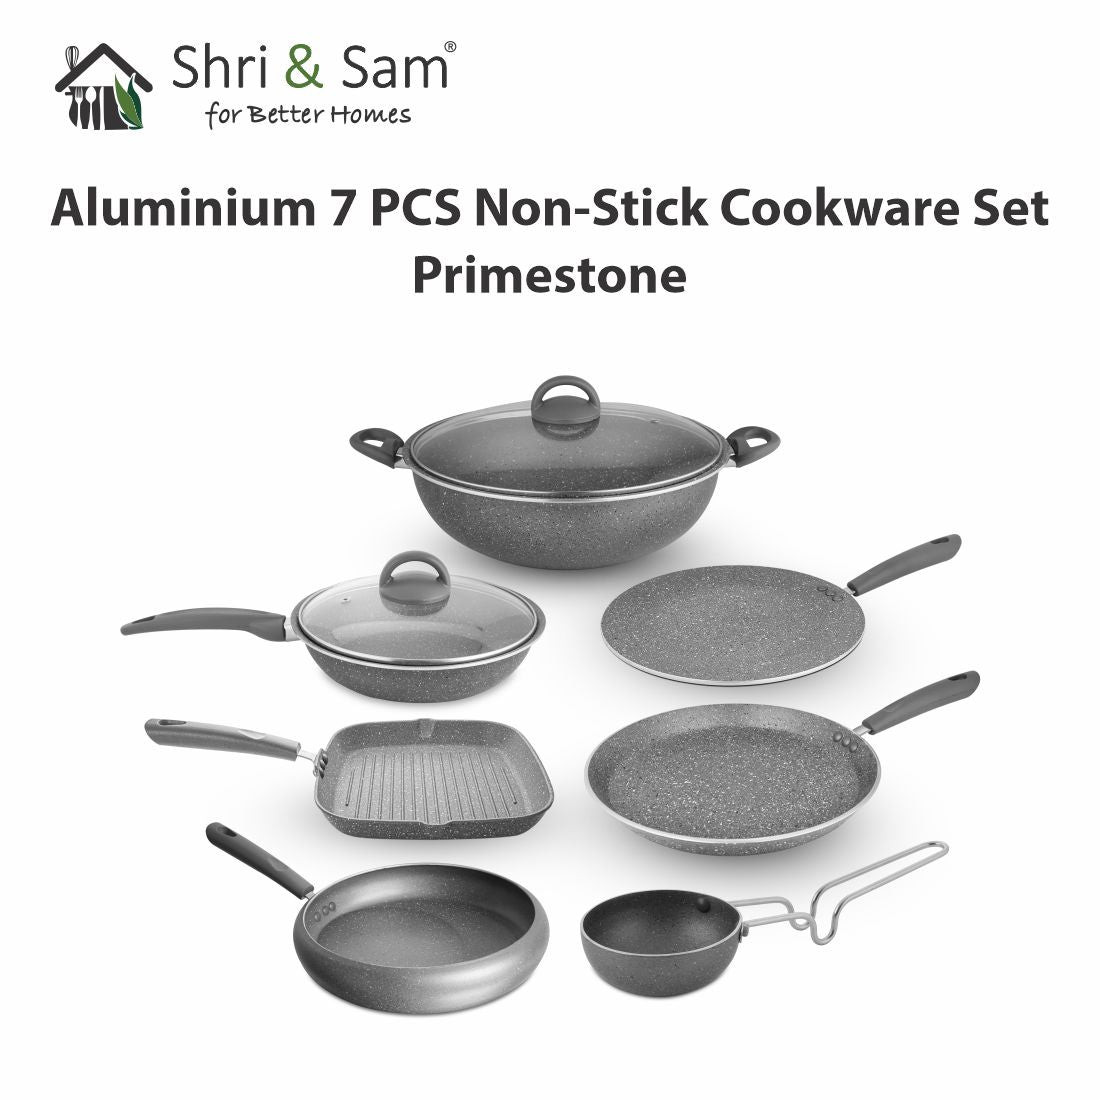 Aluminium 7 PCS Non-Stick Cookware Set Primestone